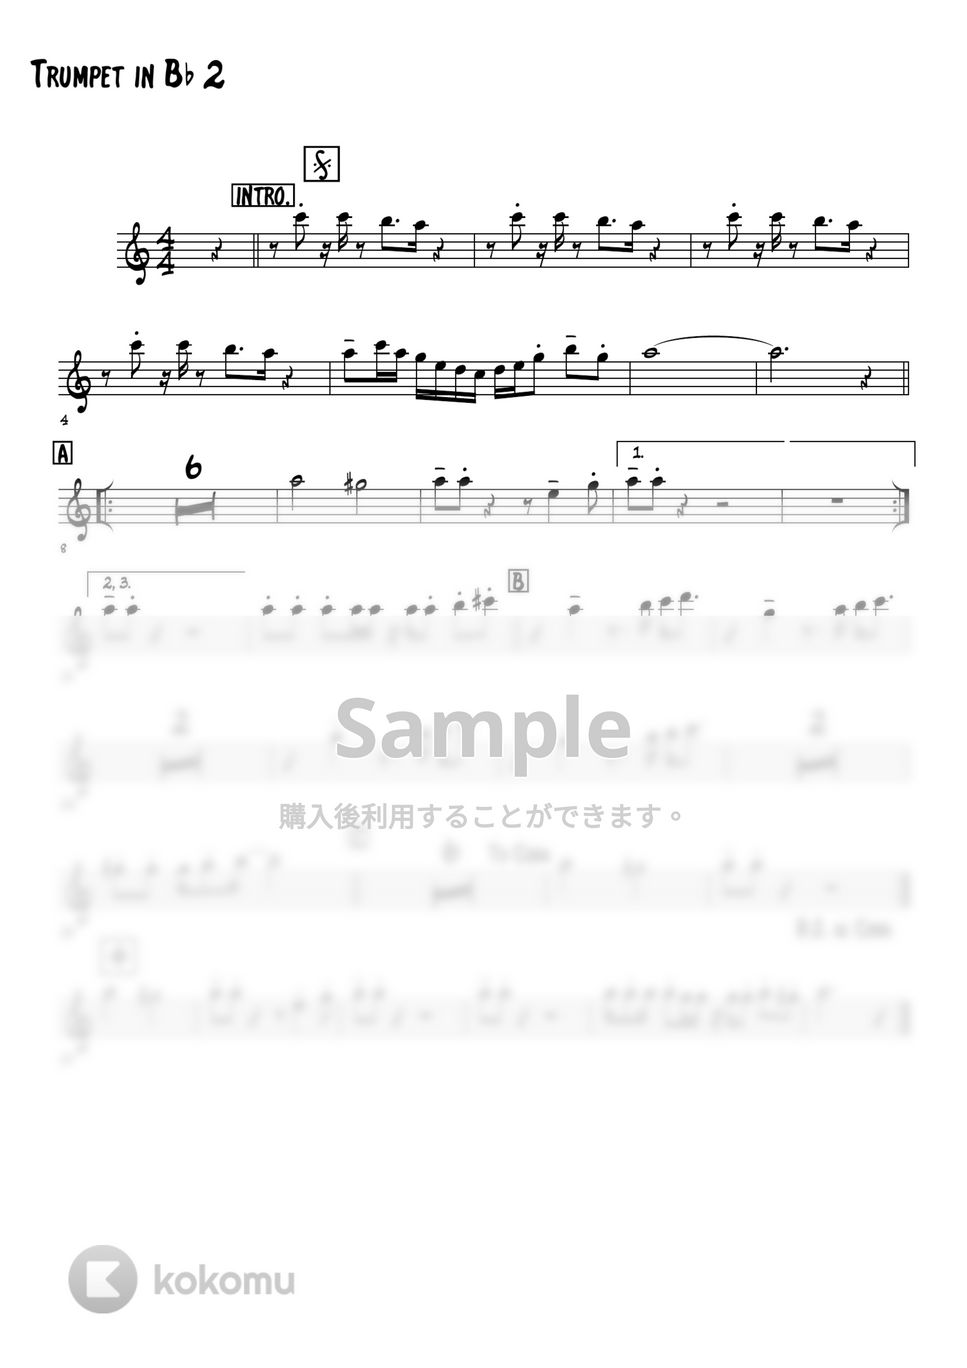 和田アキ子 - 古い日記 (トランペット4パート+Bass+Drums) by 高田将利